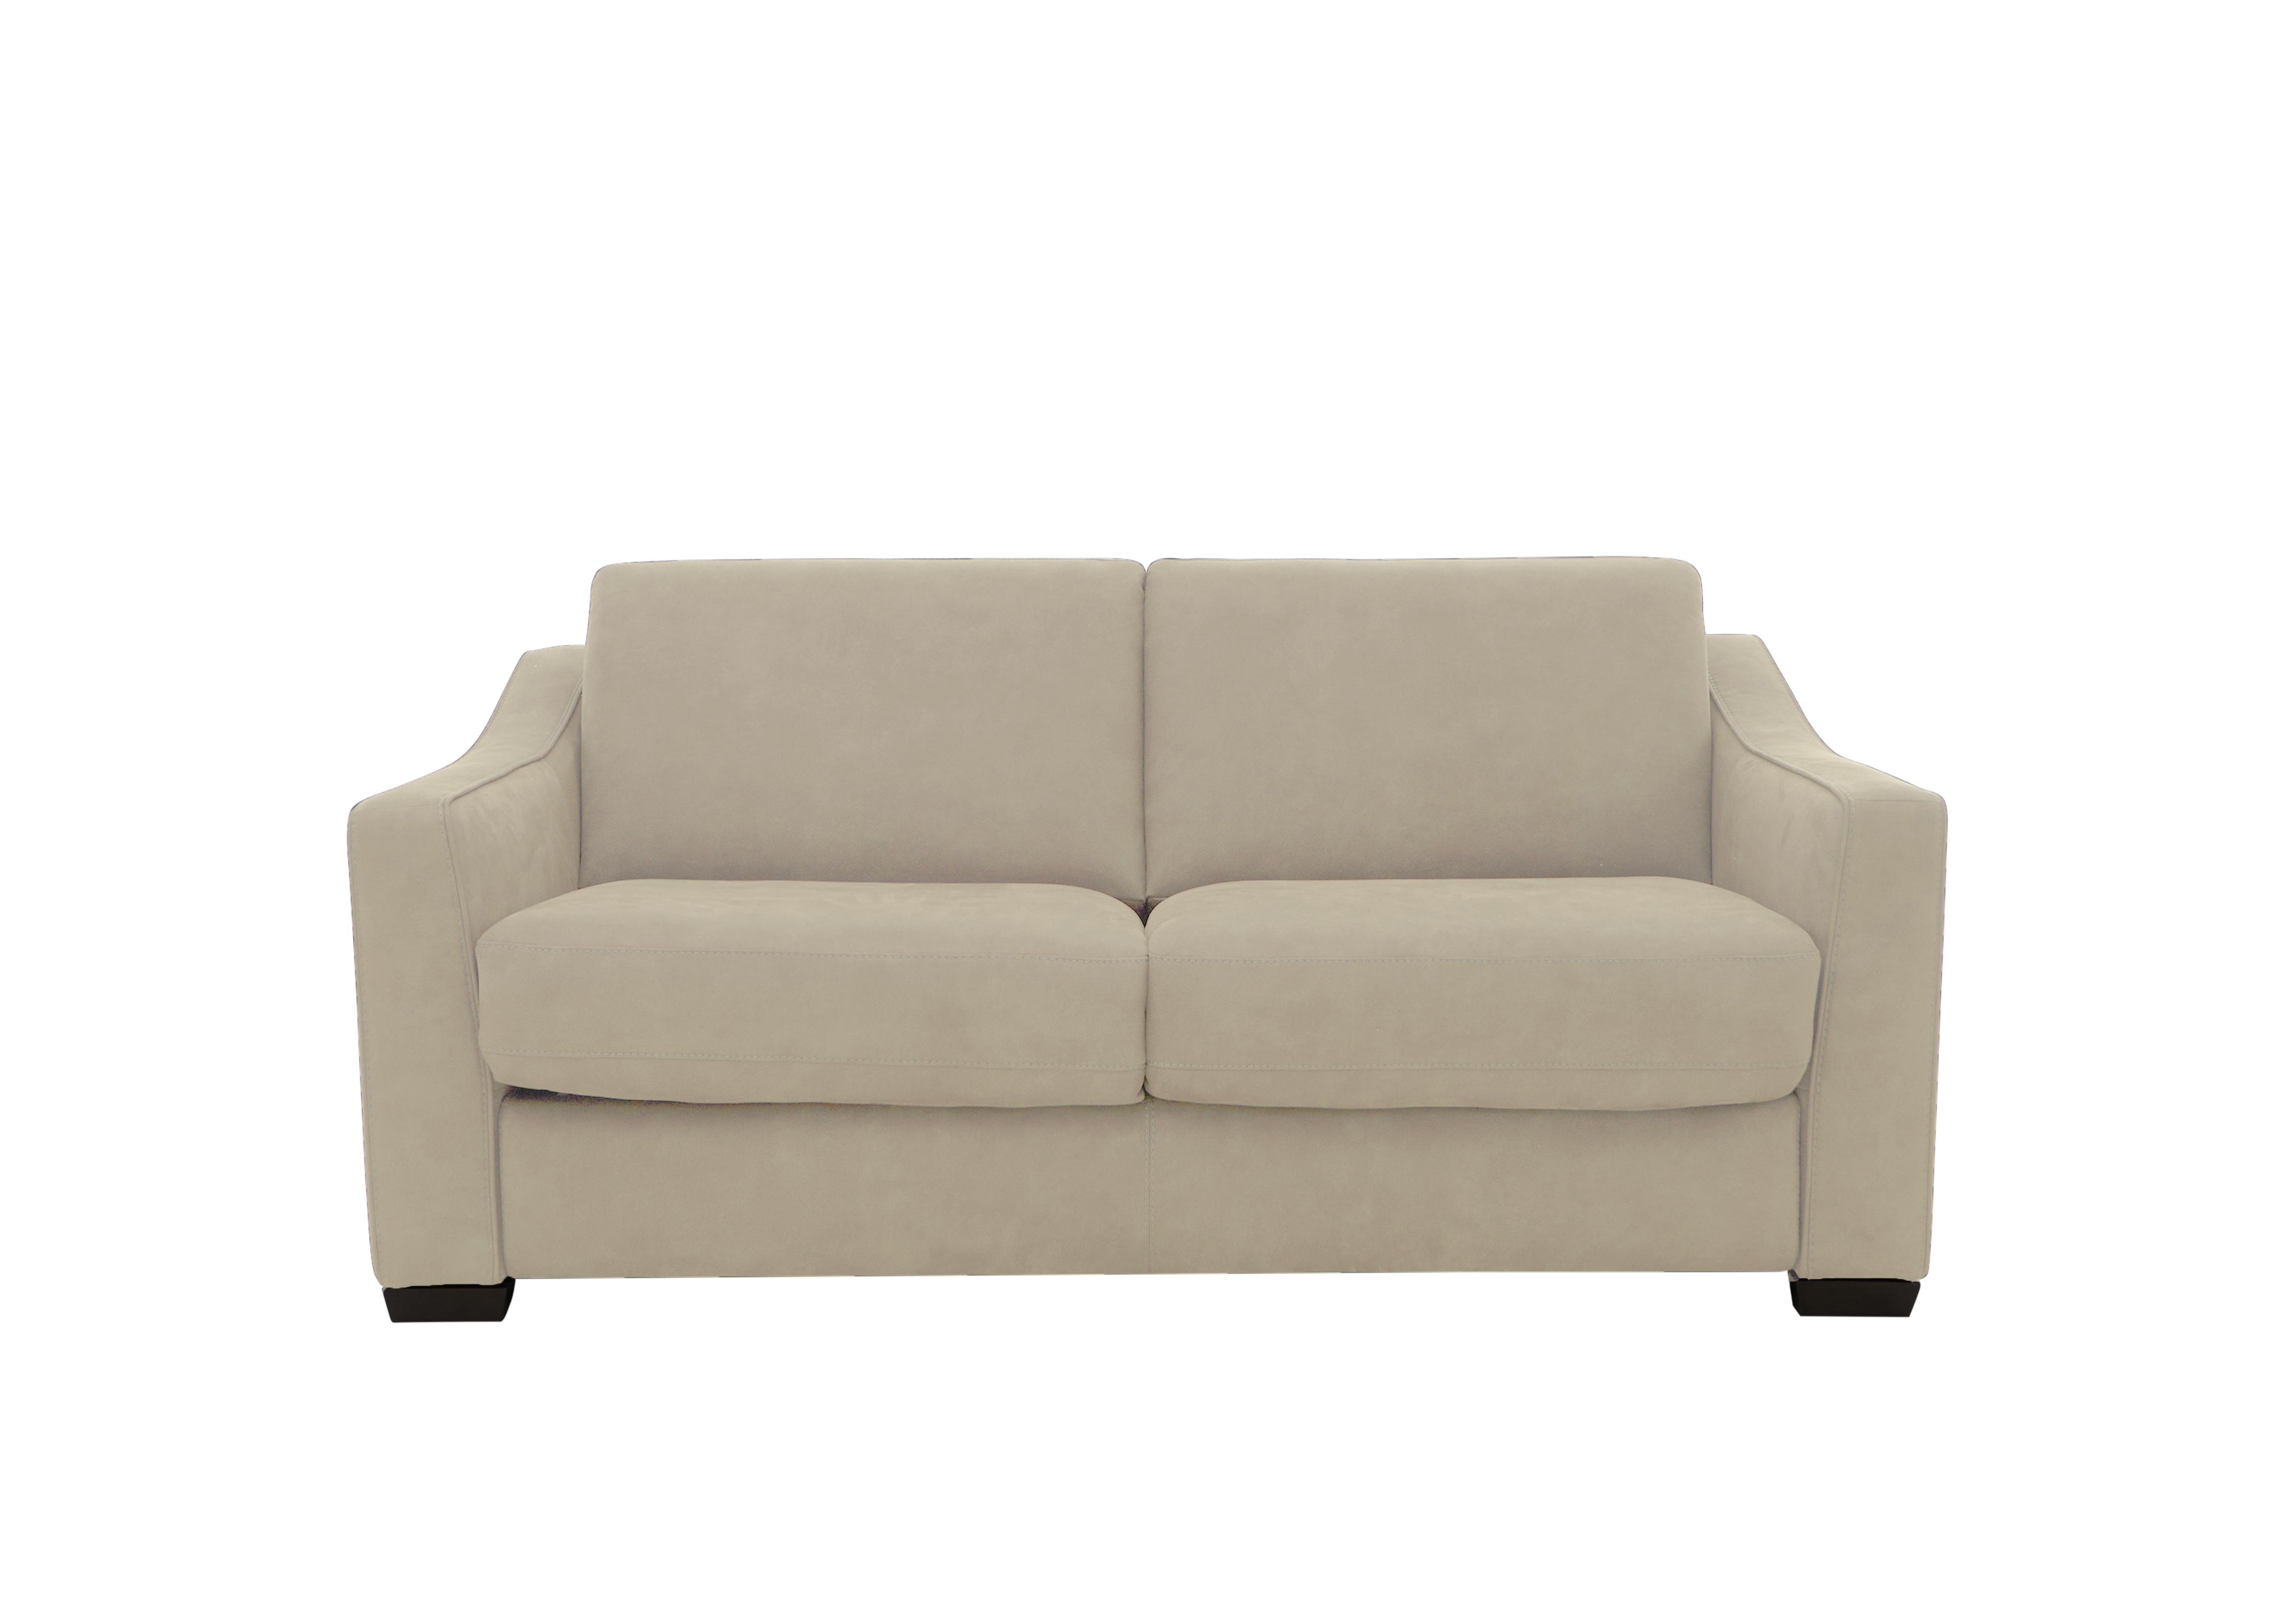 Optimus 2 Seater Fabric Sofa in Bfa-Blj-R20 Bisque on Furniture Village